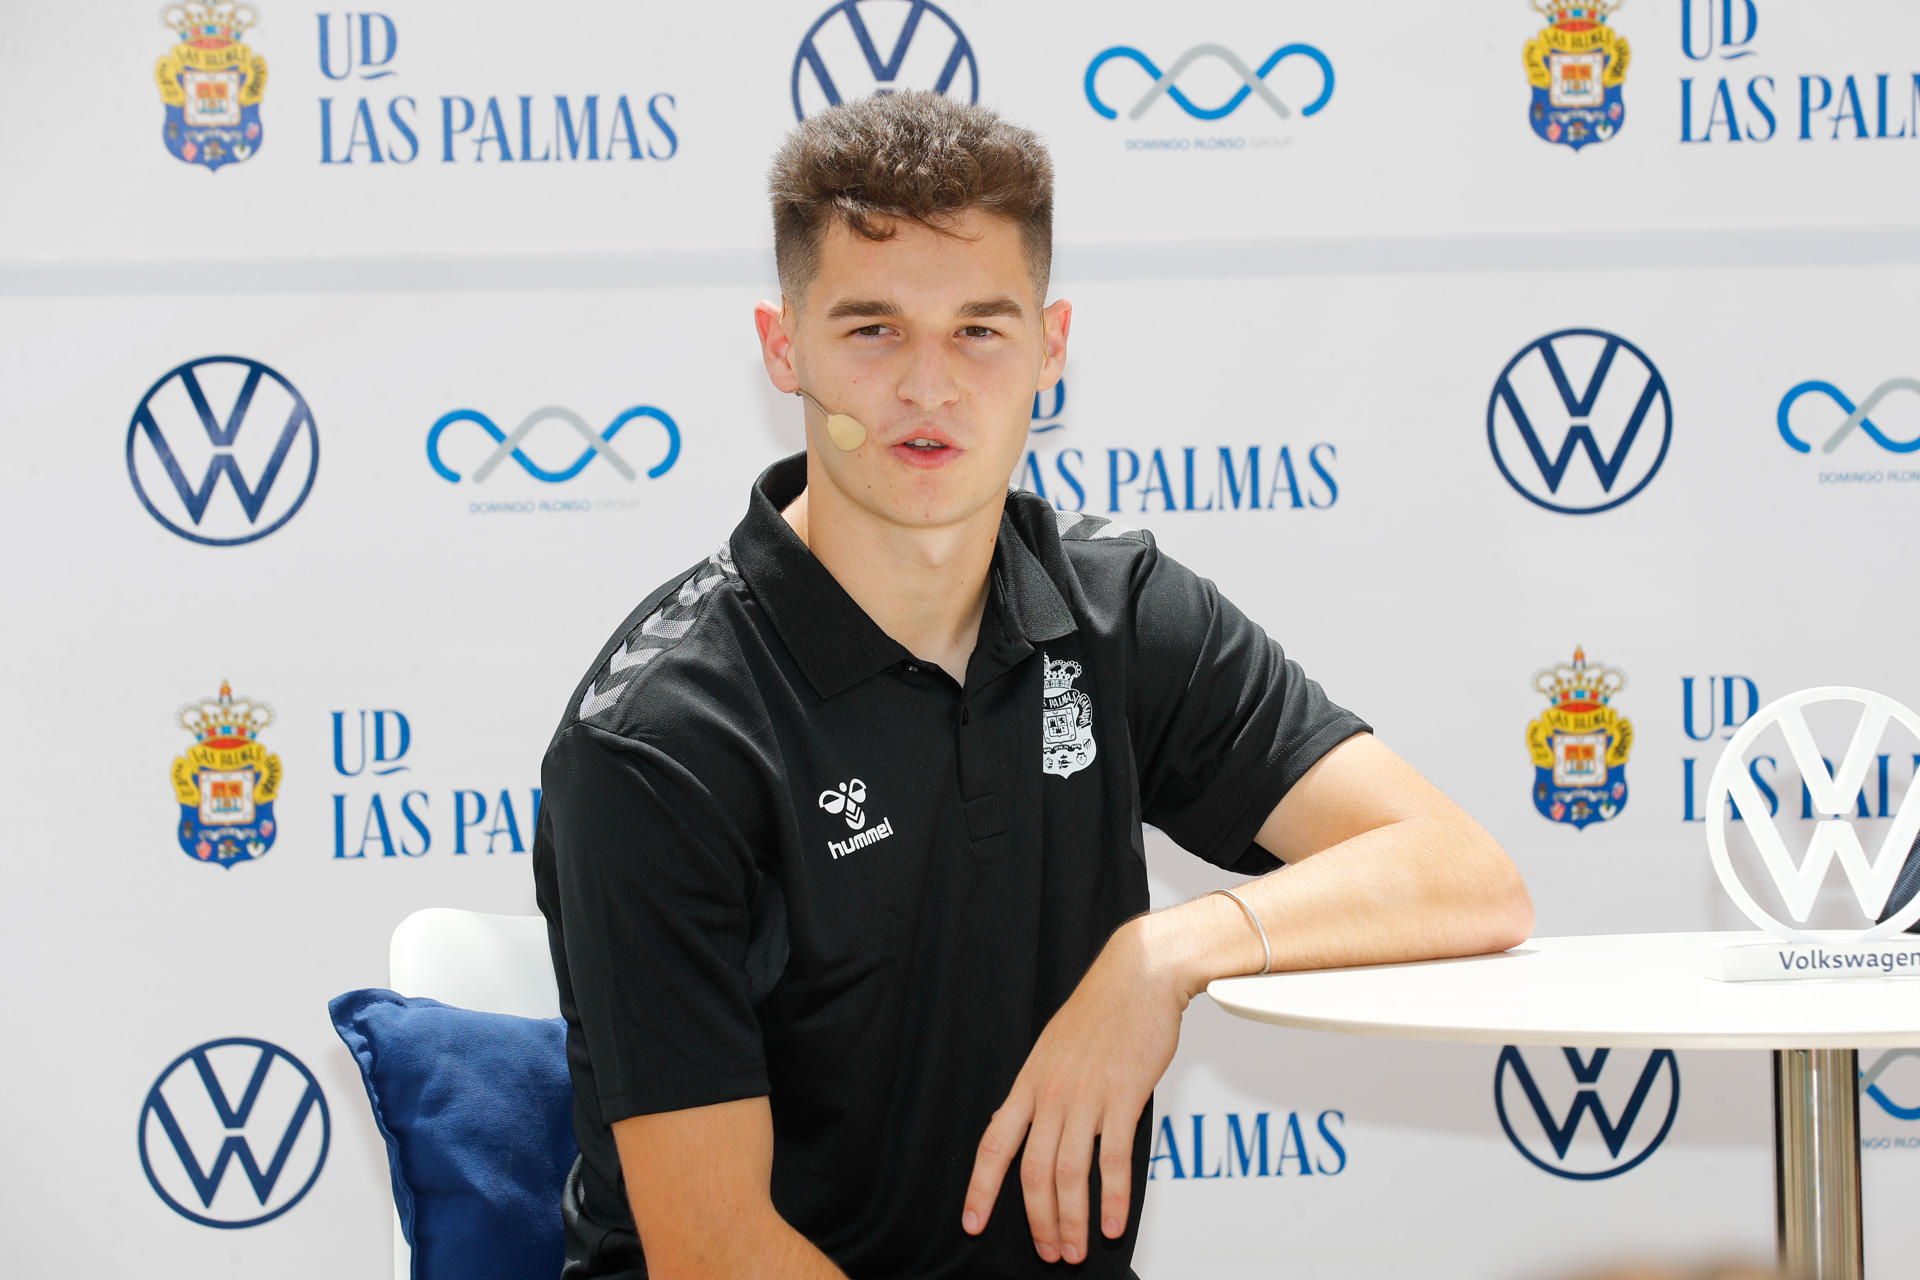 La UD Las Palmas presenta este viernes a su nuevo jugador Mika Mármol. EFE/ Elvira Urquijo A.